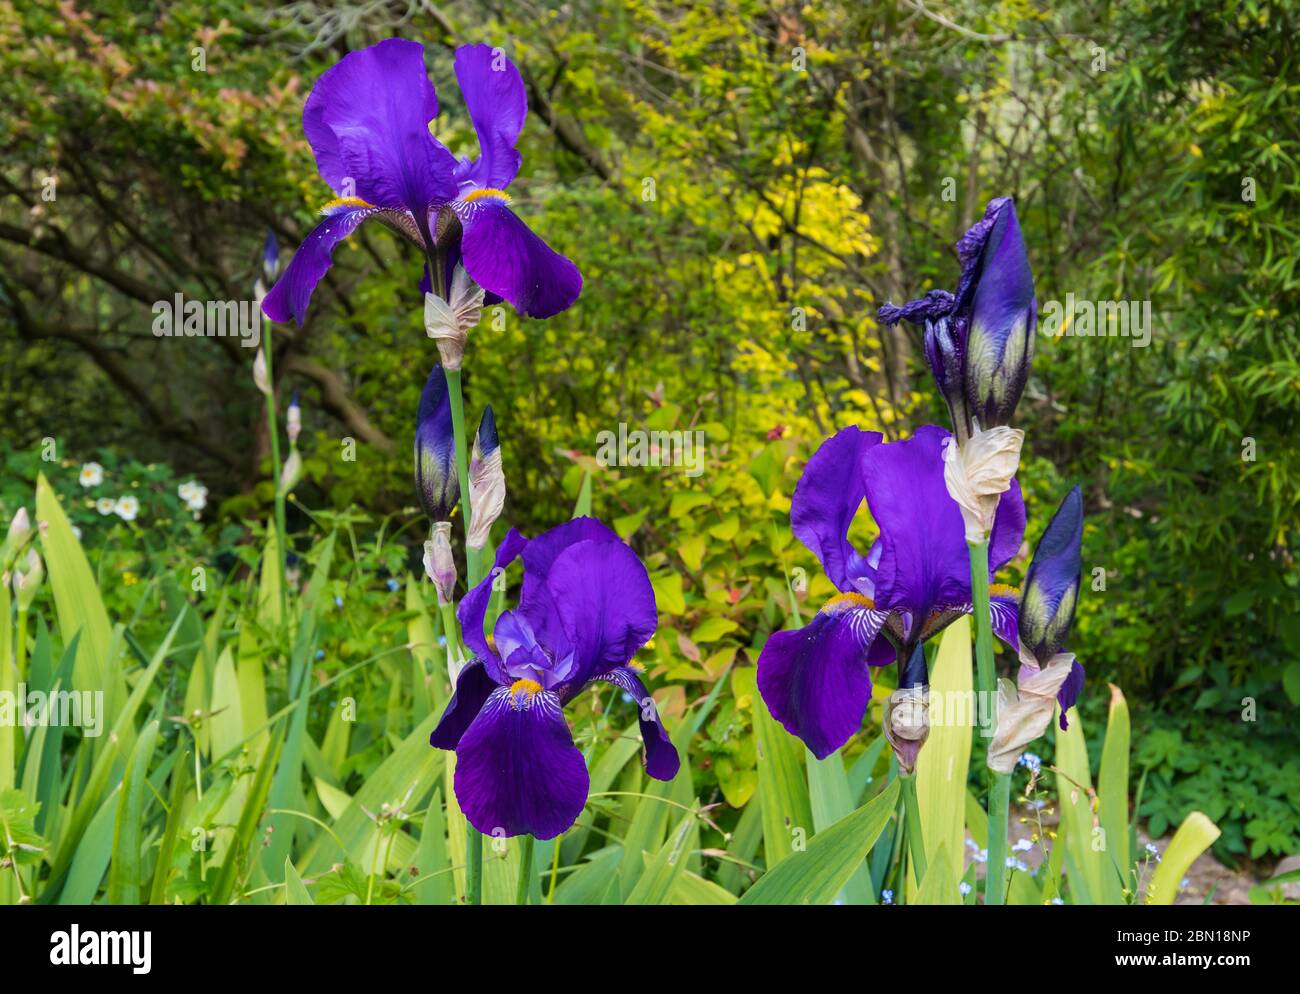 Bärtige Iris (Iris germanica), dunkelviolette oder violette Farben, sehr große Irises in einem Garten im Frühjahr (Mai) in West Sussex, England, Großbritannien. Flora. Stockfoto